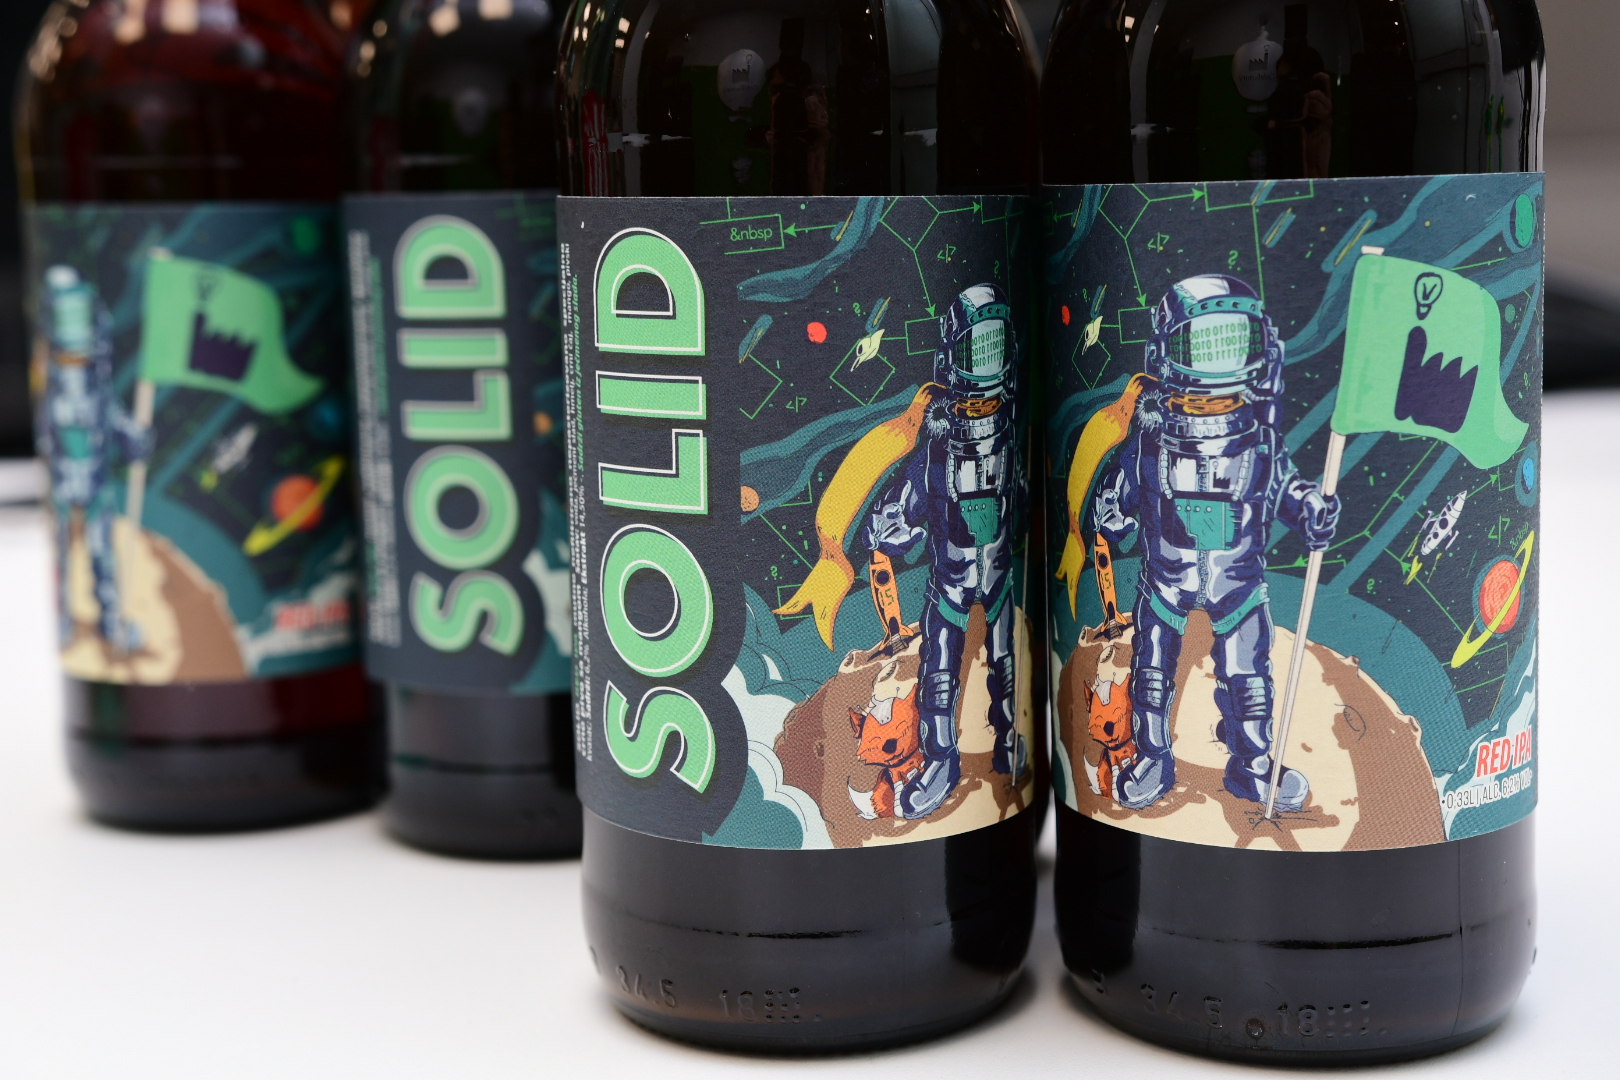 ICodeFactory SOLID beer